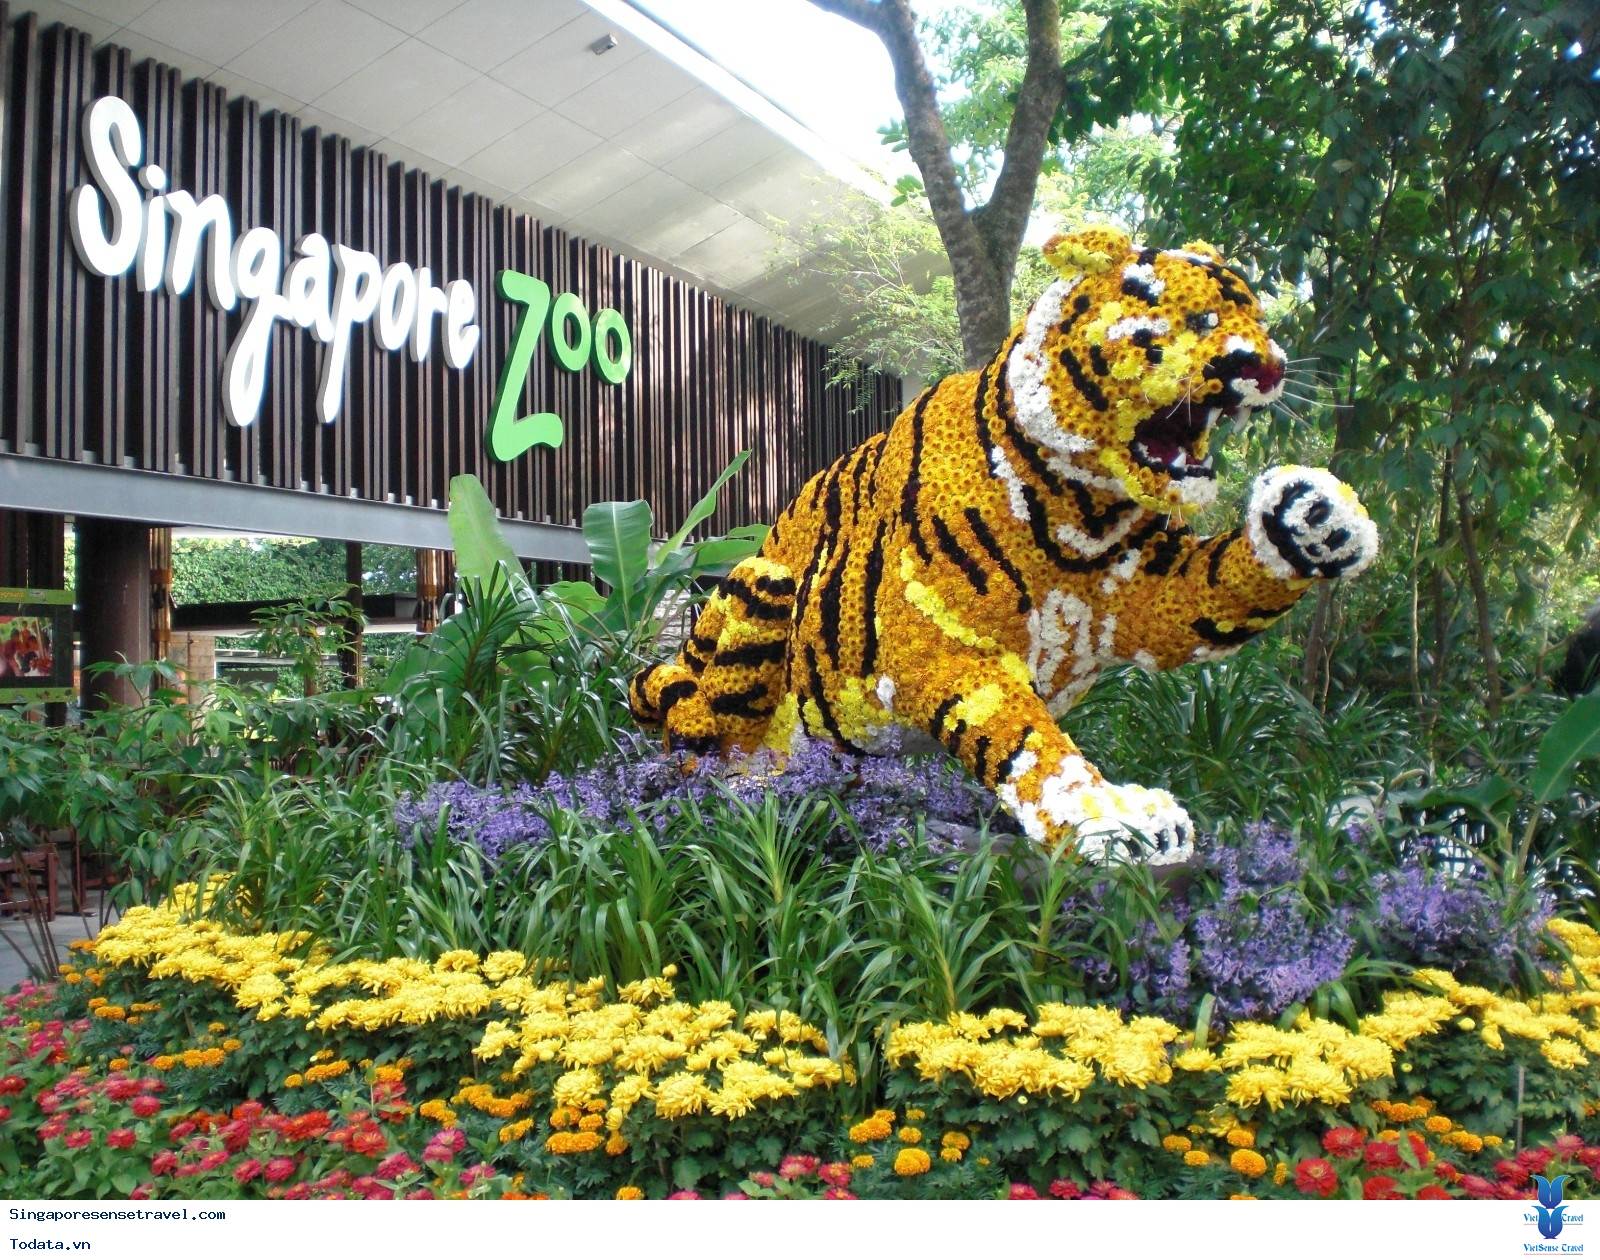 Ghé Thăm Vườn Thú Hoang Dã Đẹp Nhất Singapore (Singapore Zoo)